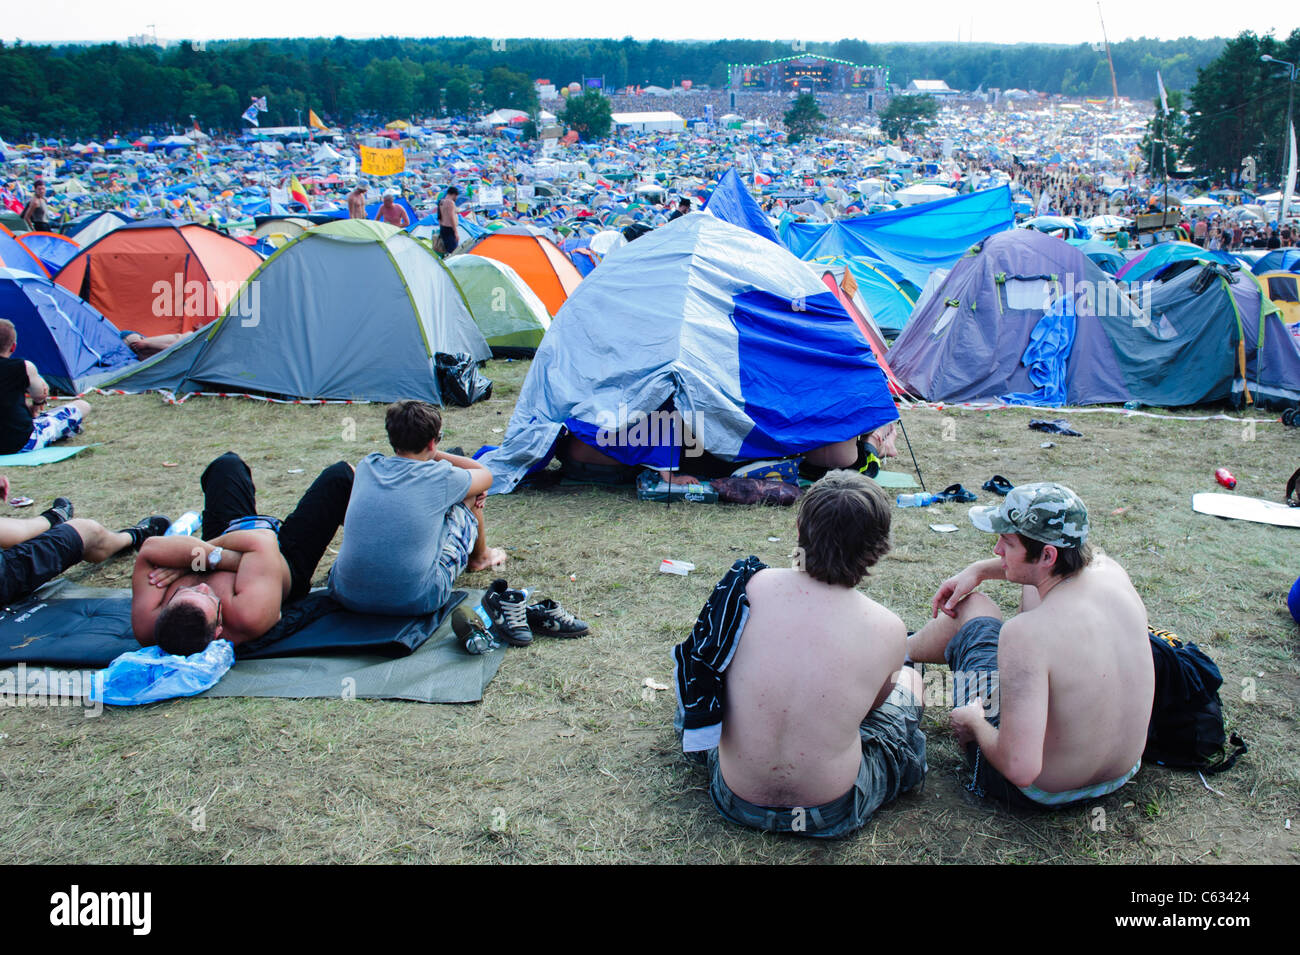 People enjoying at the Przystanek Woodstock - Europe's largest open air festival in Kostrzyn, Poland Stock Photo